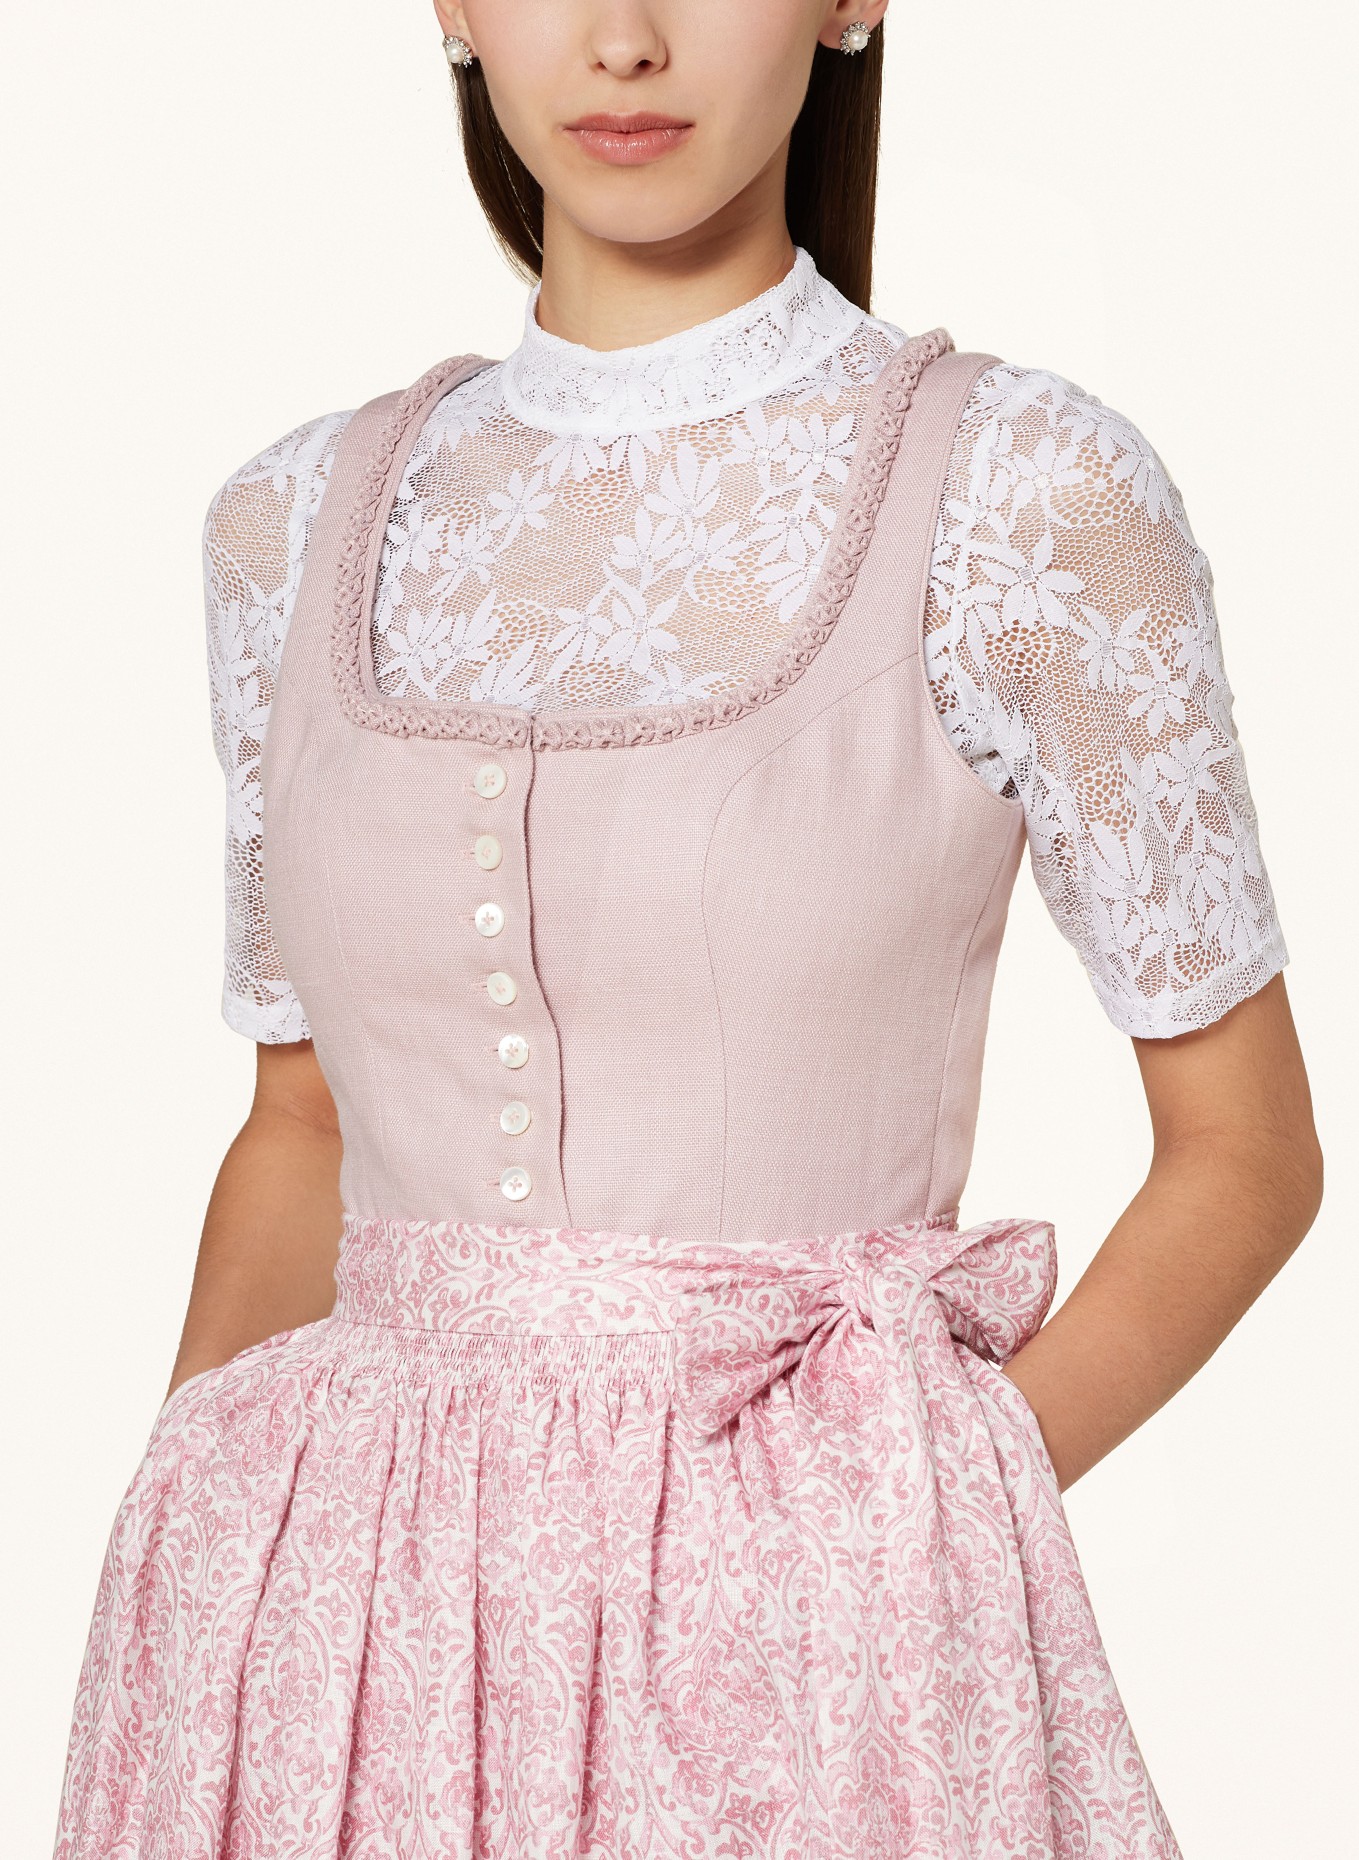 Hammerschmid Dirndl blouse BABSI, Color: WHITE (Image 3)